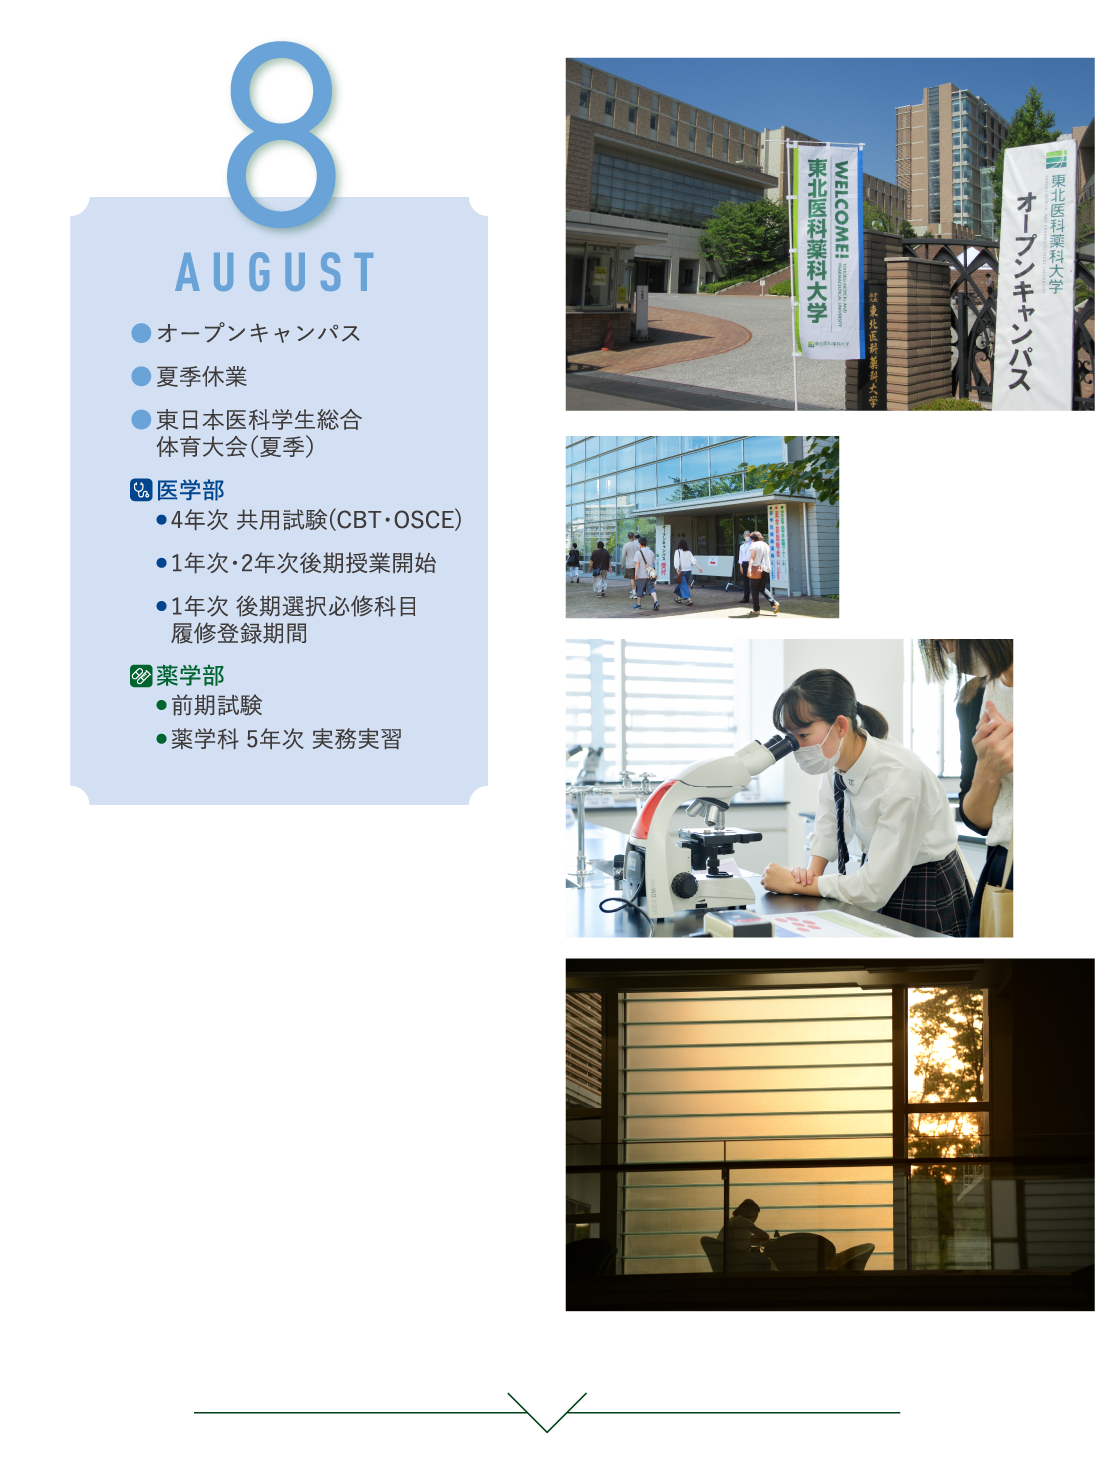 8月 オープンキャンパス・夏季休業・東日本医科学生総合体育大会（夏季）/薬学部・前期試験・薬学科 5年次 実務実習/医学部・4年次 共用試験(CBT・OSCE)・1年次・2年次後期授業開始・1年次 後期選択必修科目・ 履修登録期間